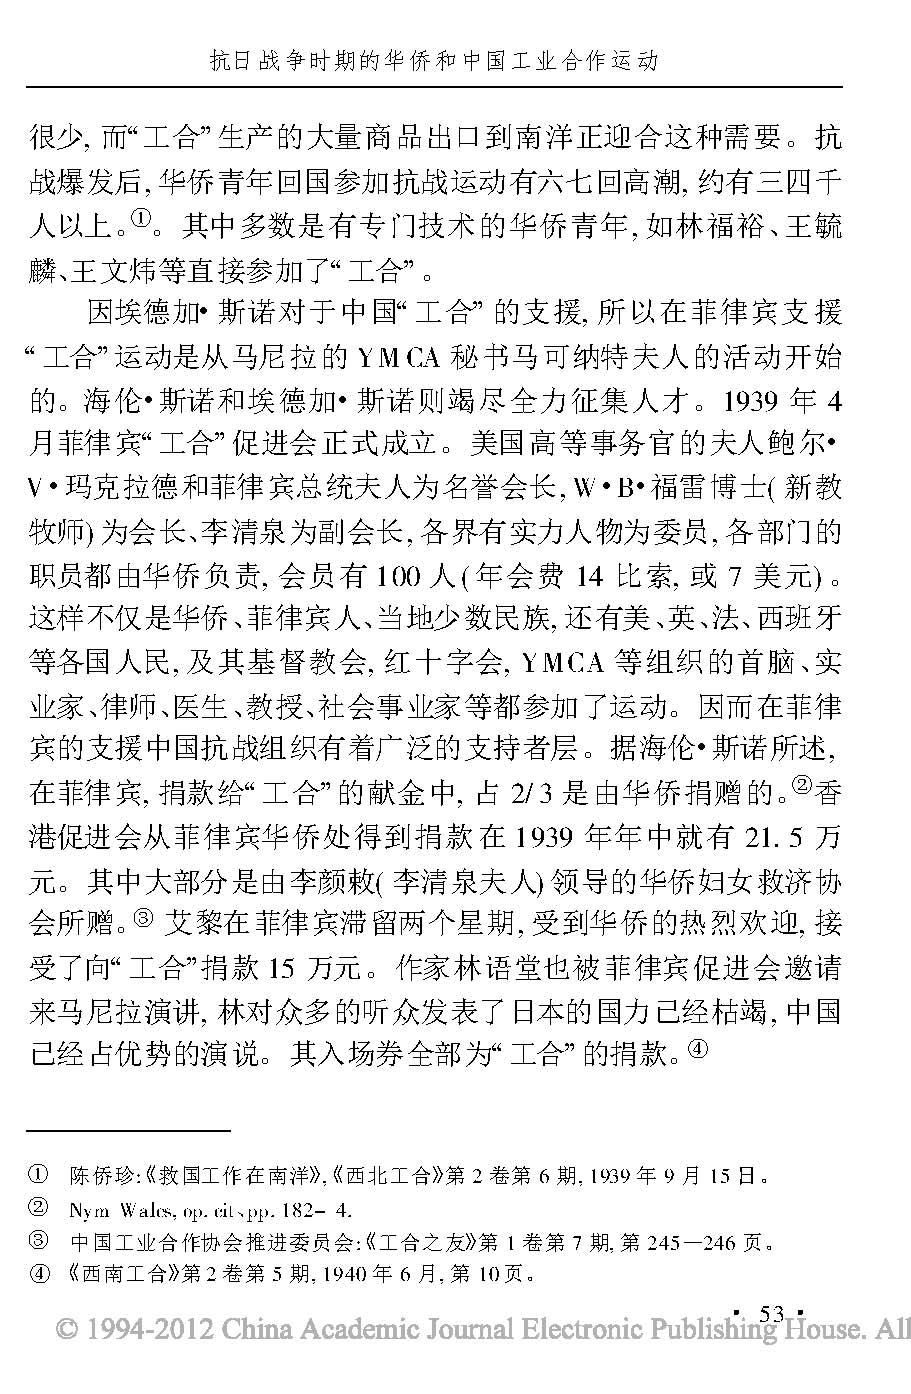 抗日战争时期的华侨和中国工业合作运动_页面_10.jpg